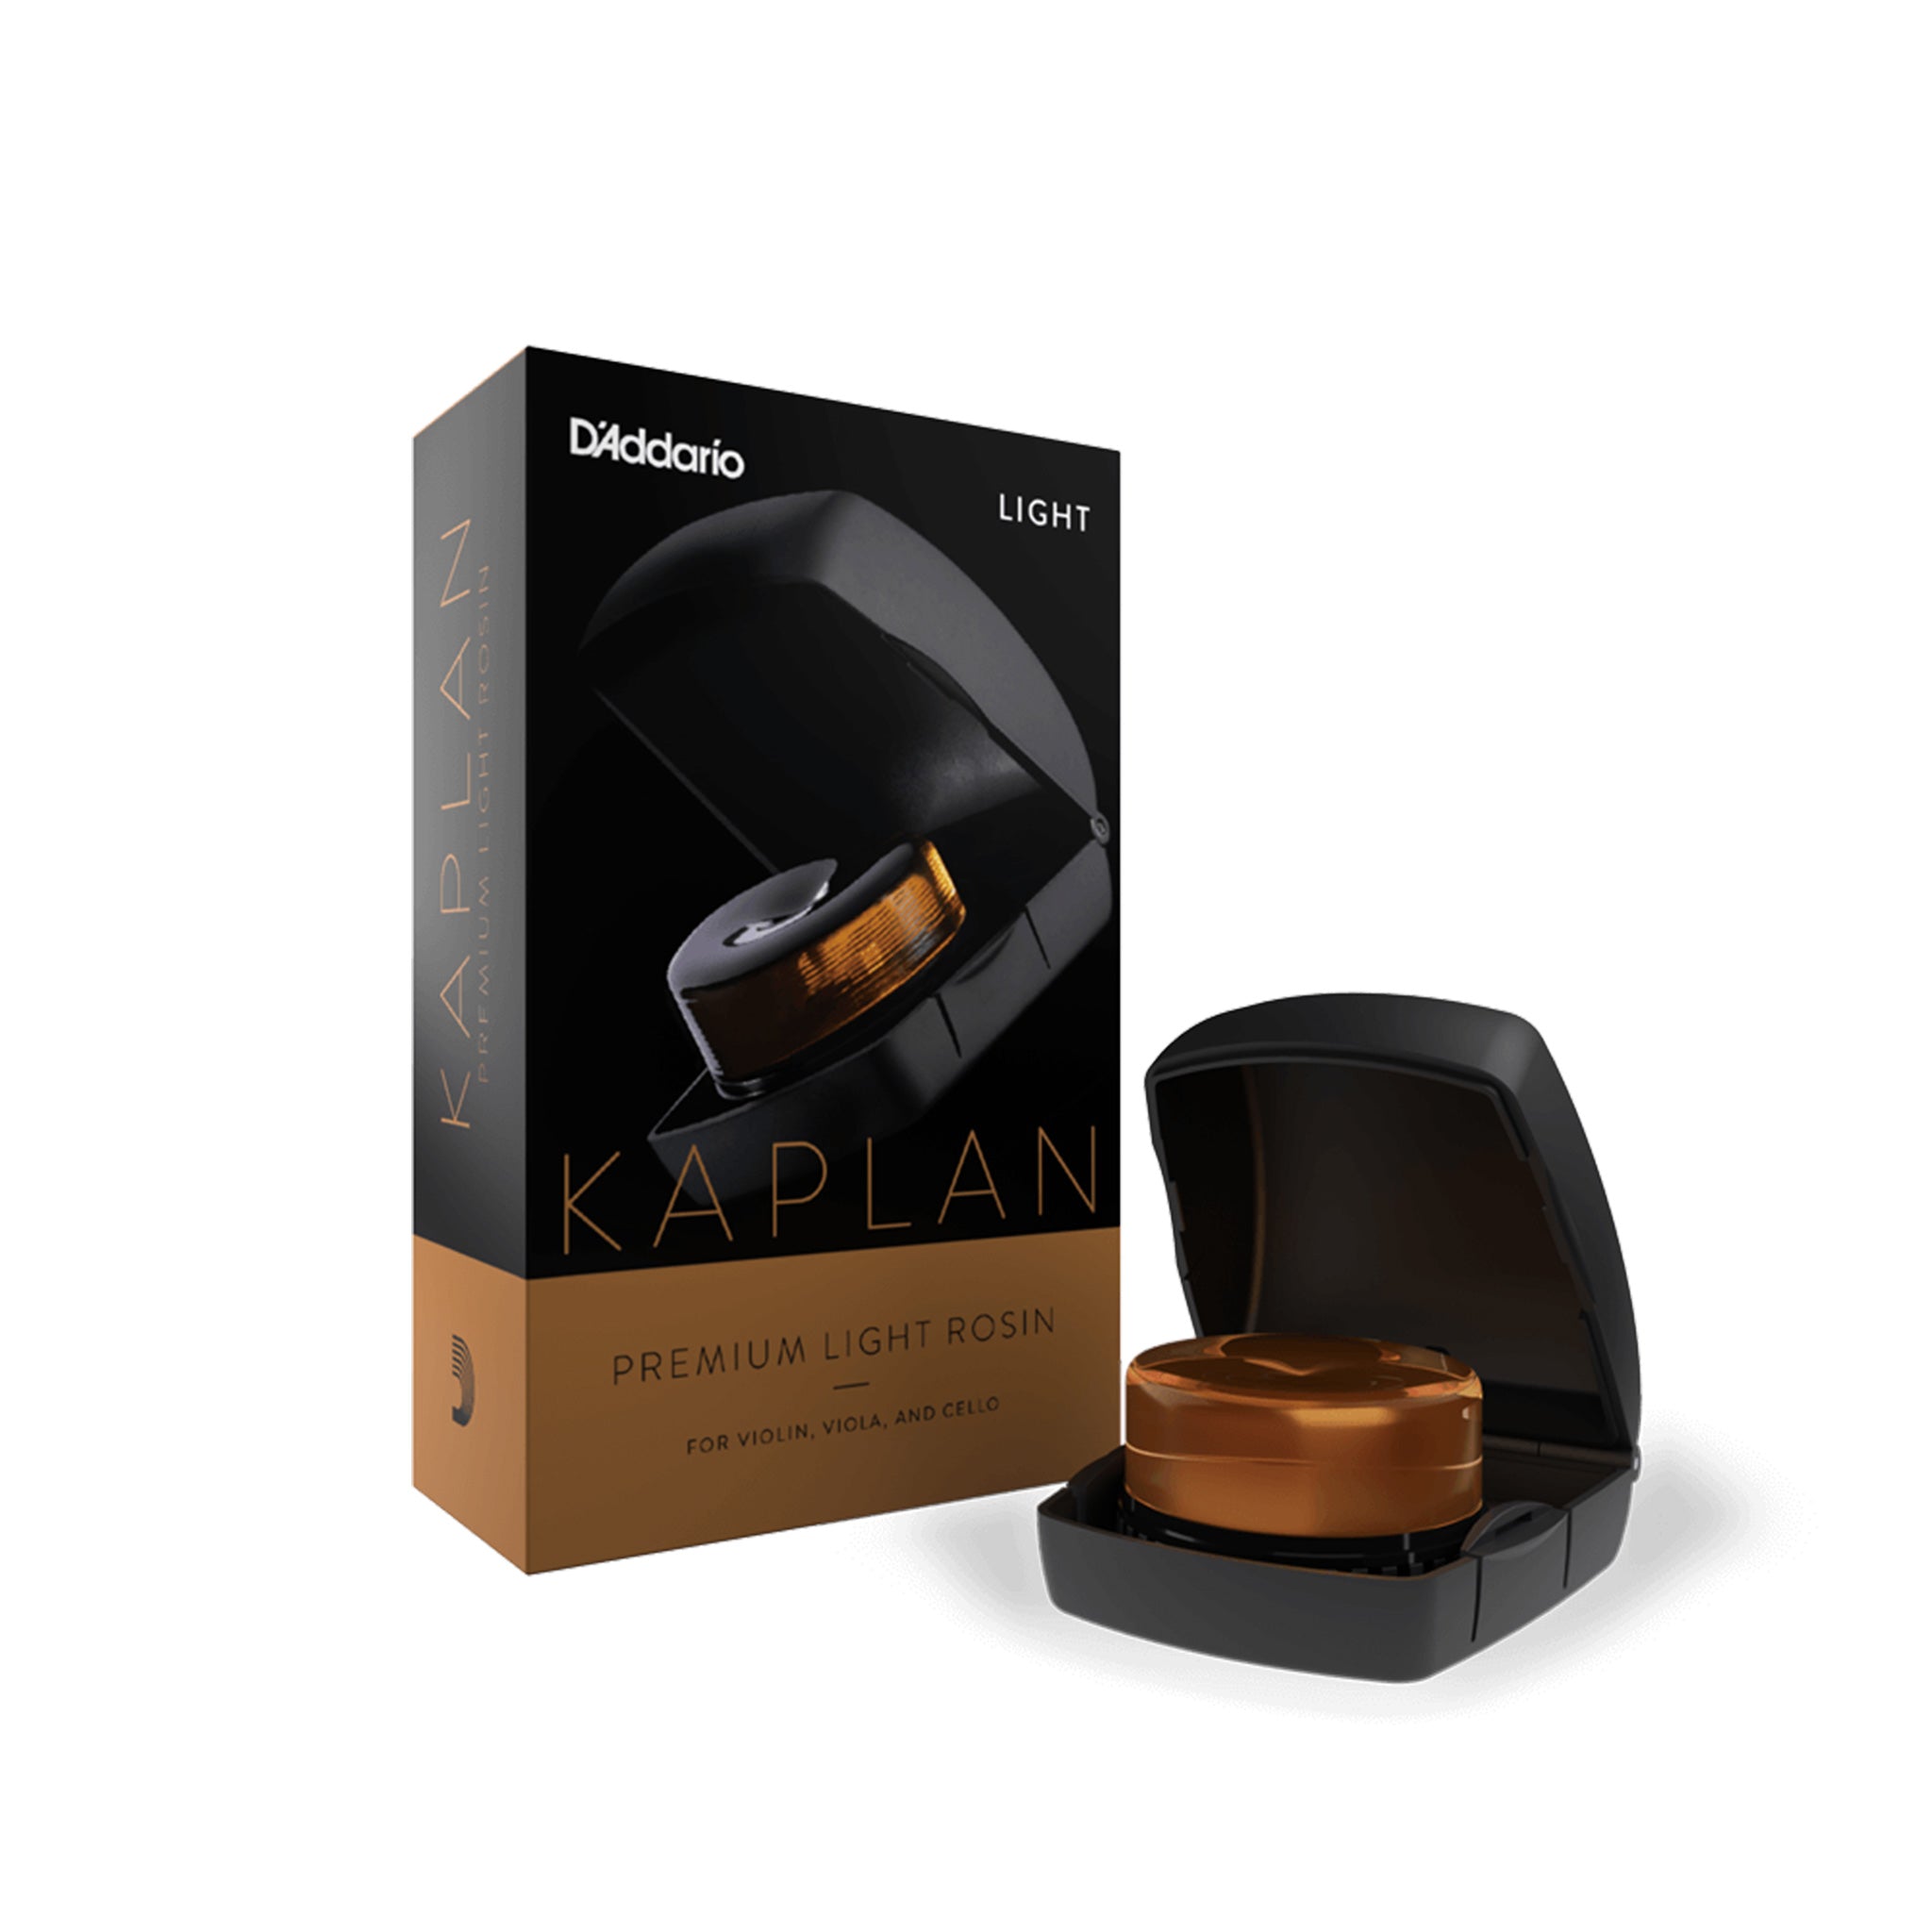 D'Addario Kaplan Premium Rosin Light